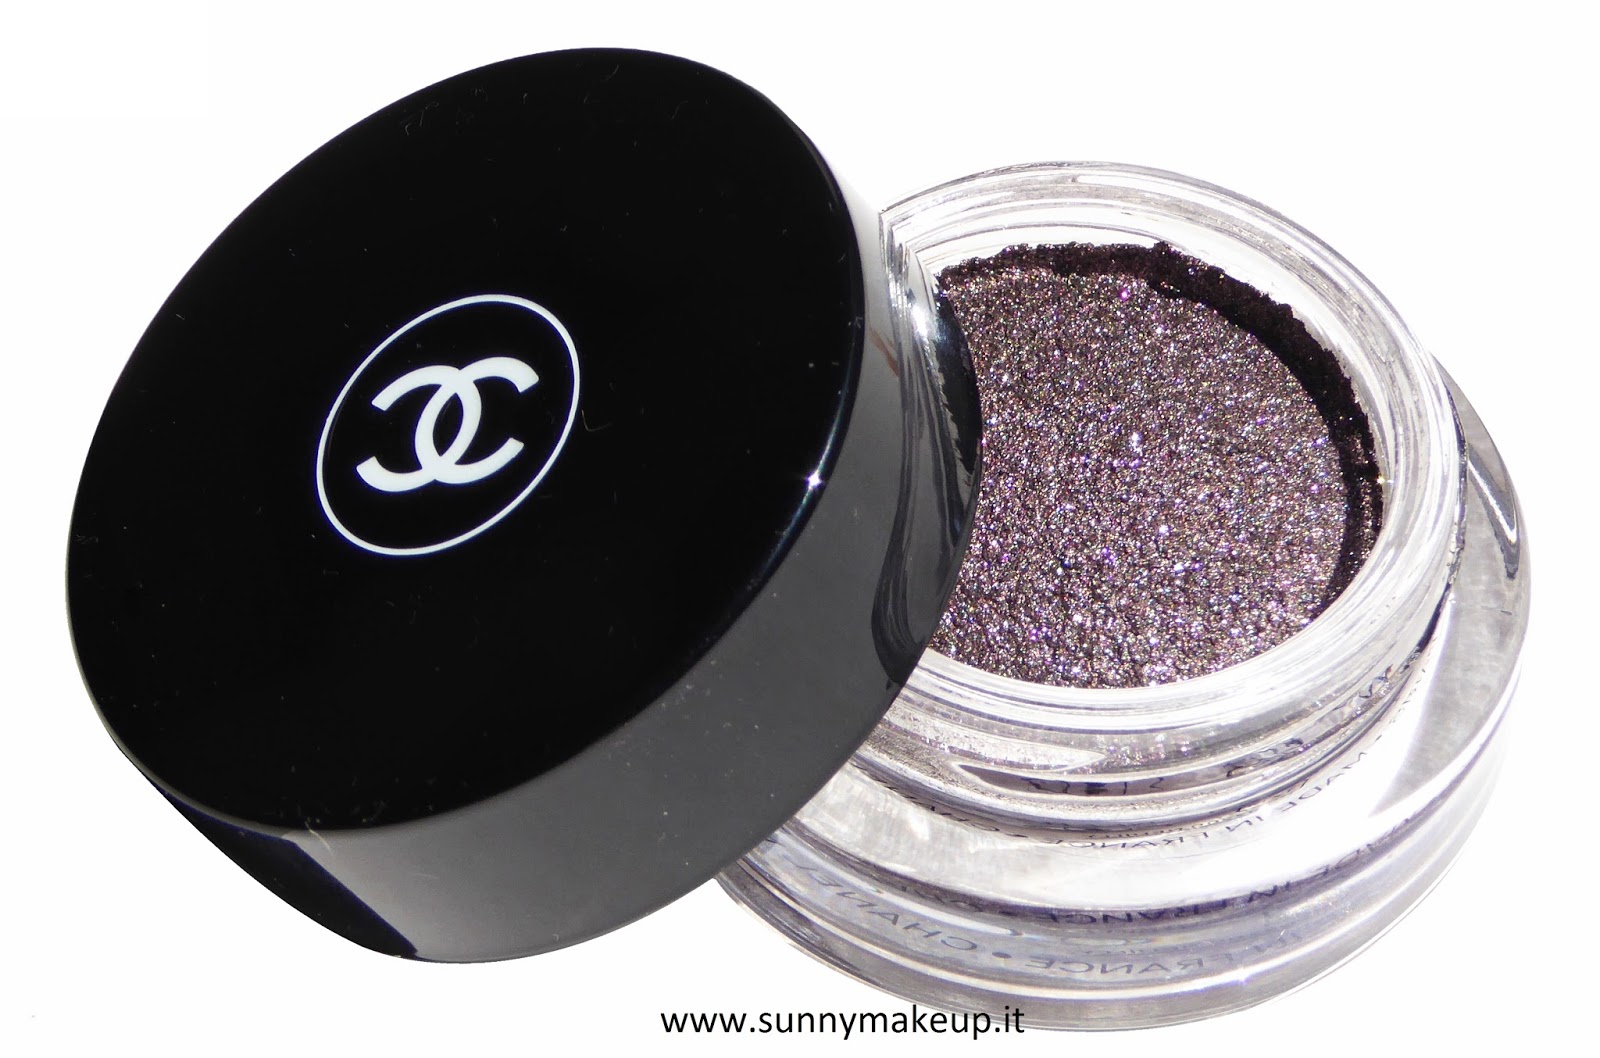 Chanel - Illusion d'Ombre: Swatch e review dell'ombretto 83 Illusoire -  Sunny Makeup